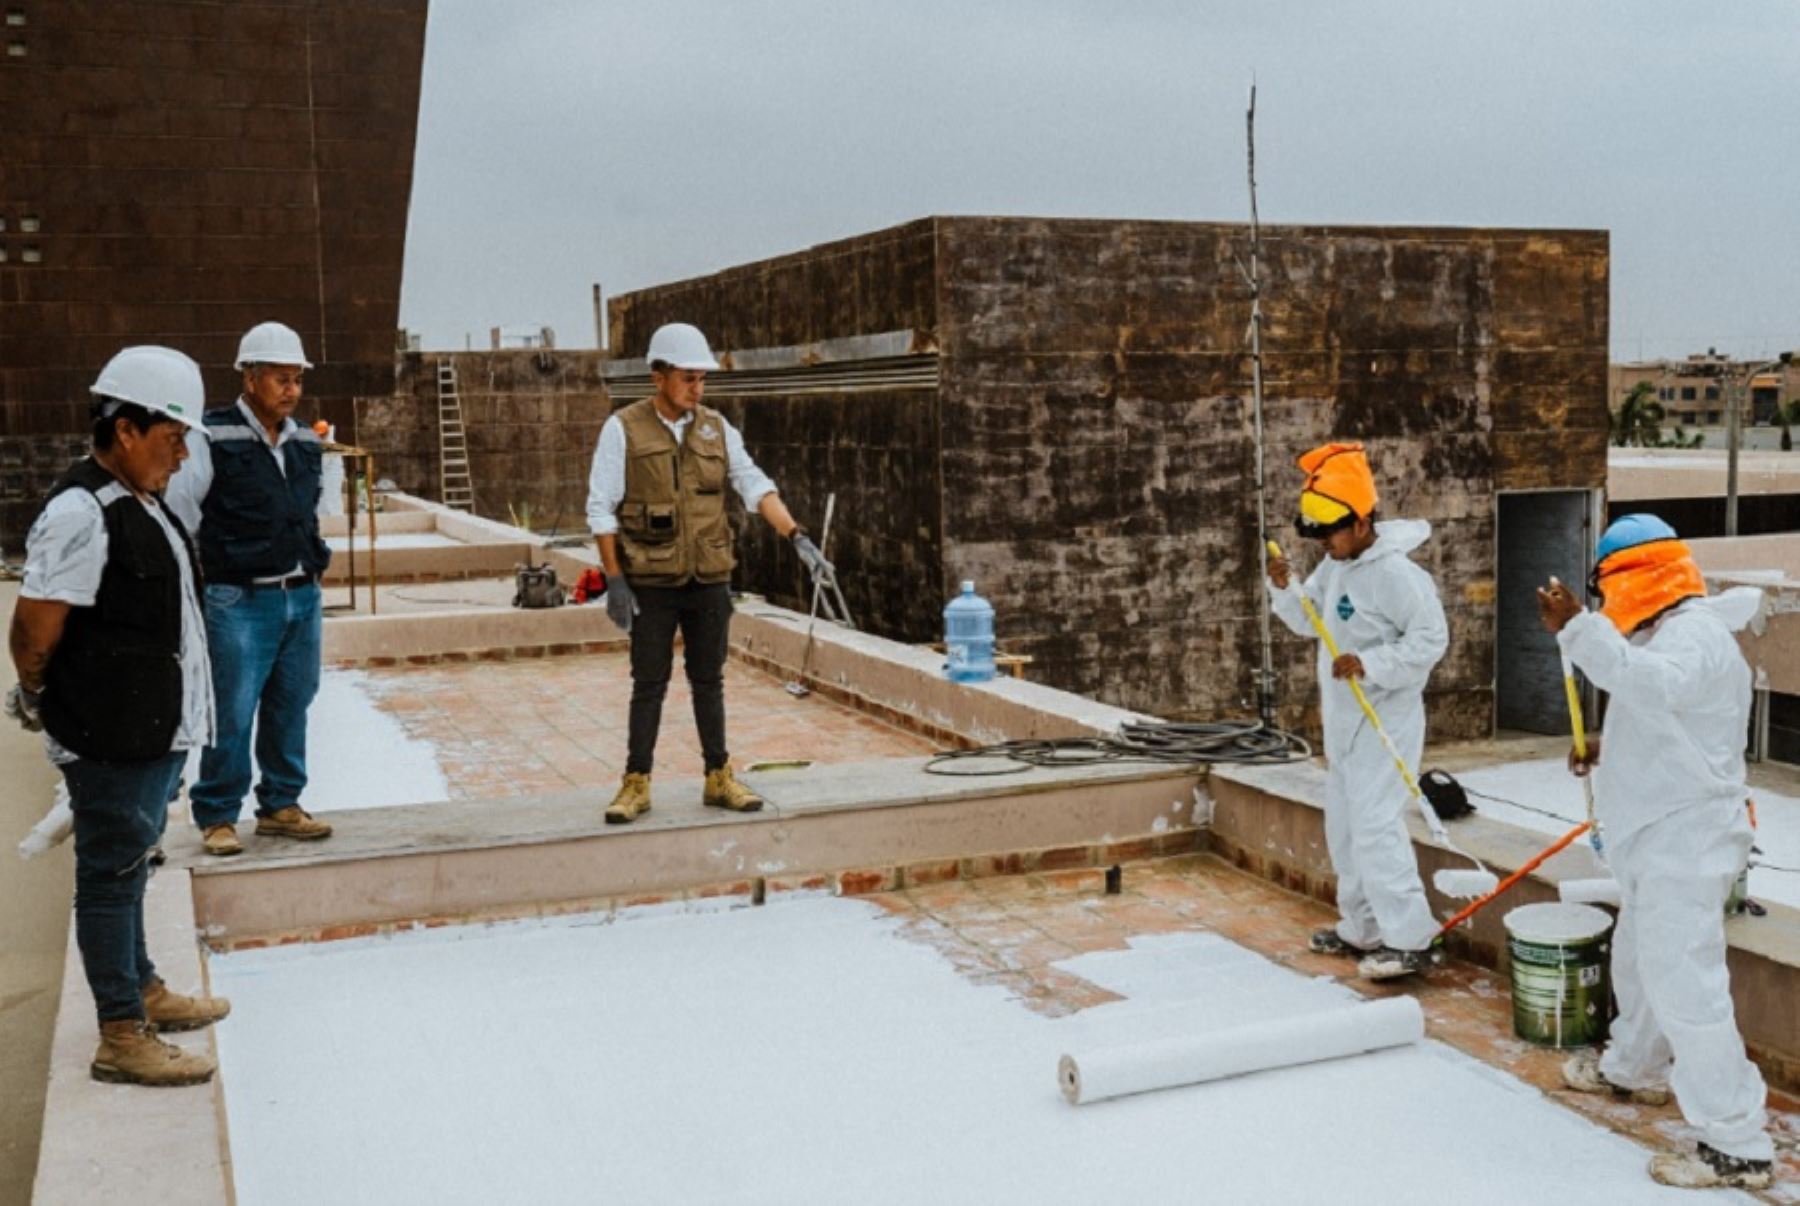 Con una inversión de más de 1 millón de soles culminó el trabajo de impermeabilización de los techos del Hospital Regional Lambayeque. Estos trabajos se realizaron como parte de las medidas preventivas y correctivas ante las 
lluvias y peligros asociados a las condiciones climáticas actuales.